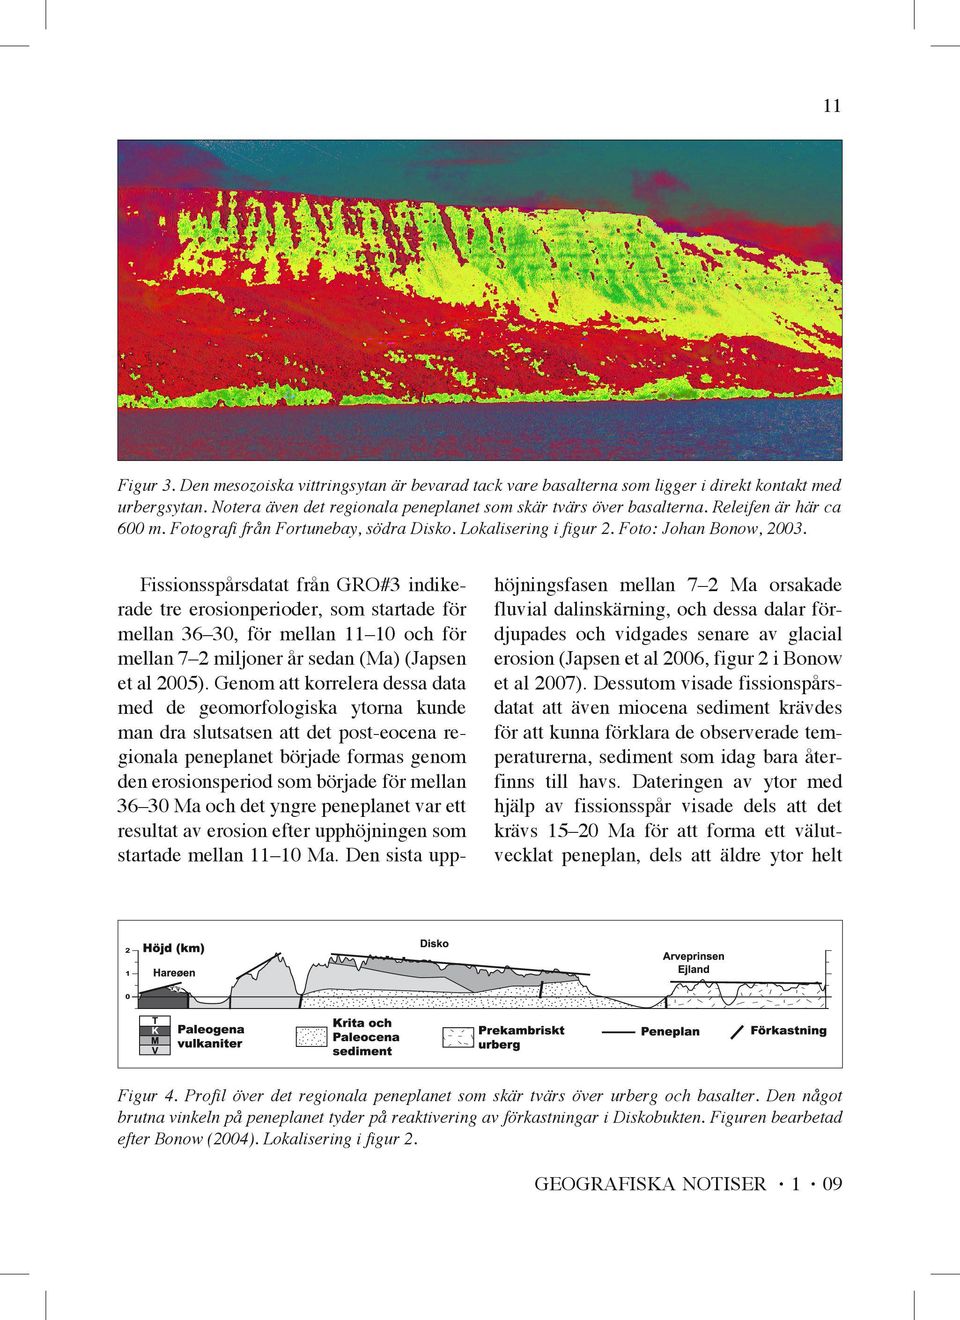 Fissionsspårsdatat från GRO#3 indikerade tre erosionperioder, som startade för mellan 36 30, för mellan 11 10 och för mellan 7 2 miljoner år sedan (Ma) (Japsen et al 2005).